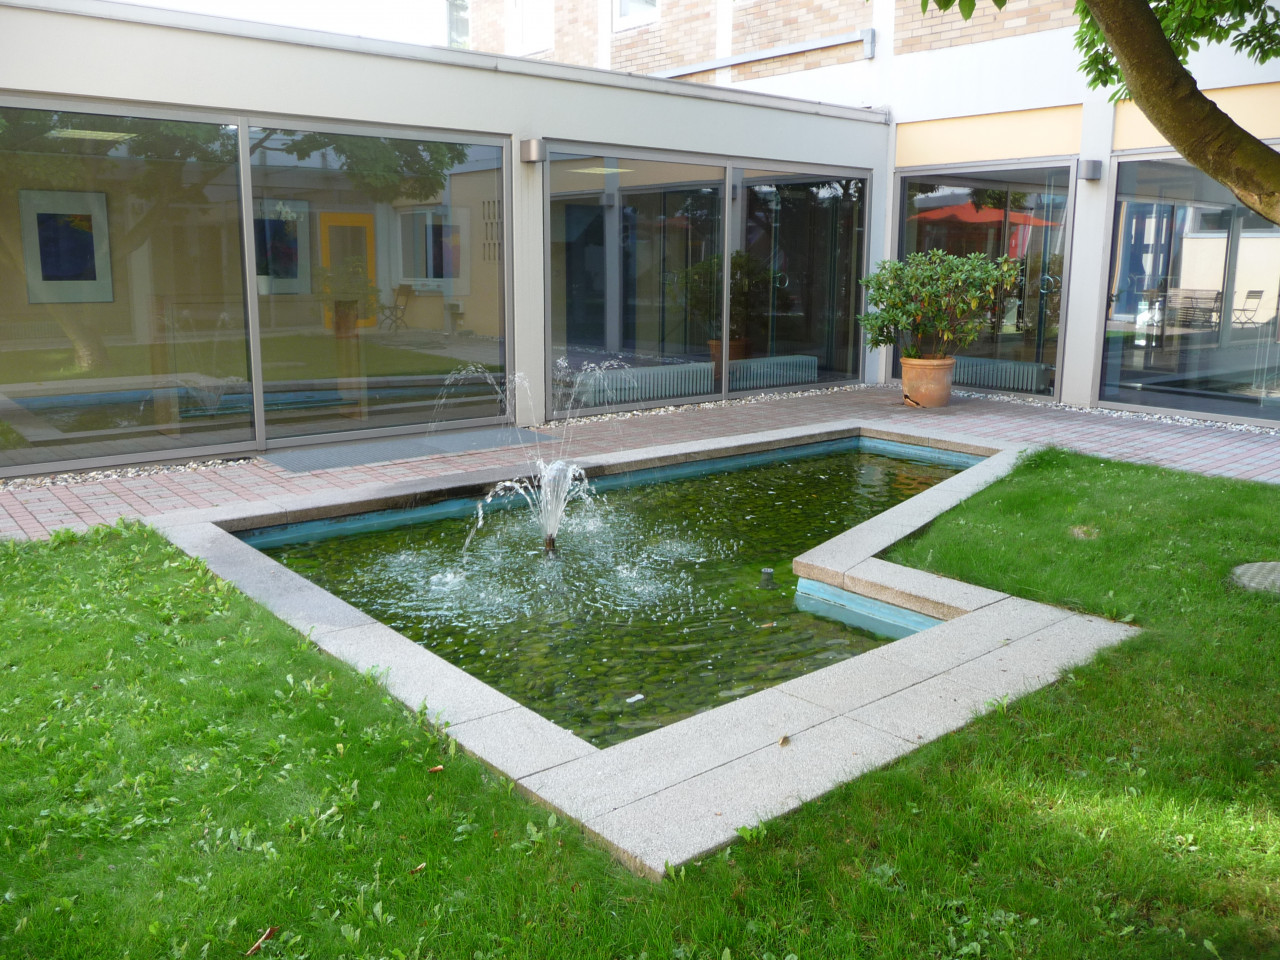 Bild eines Innenhofes der Hoffmanns Höfe zu sehen ist ein Teich mit Wasserspiel und eine grüne Wiese sowie die Fensterfront.